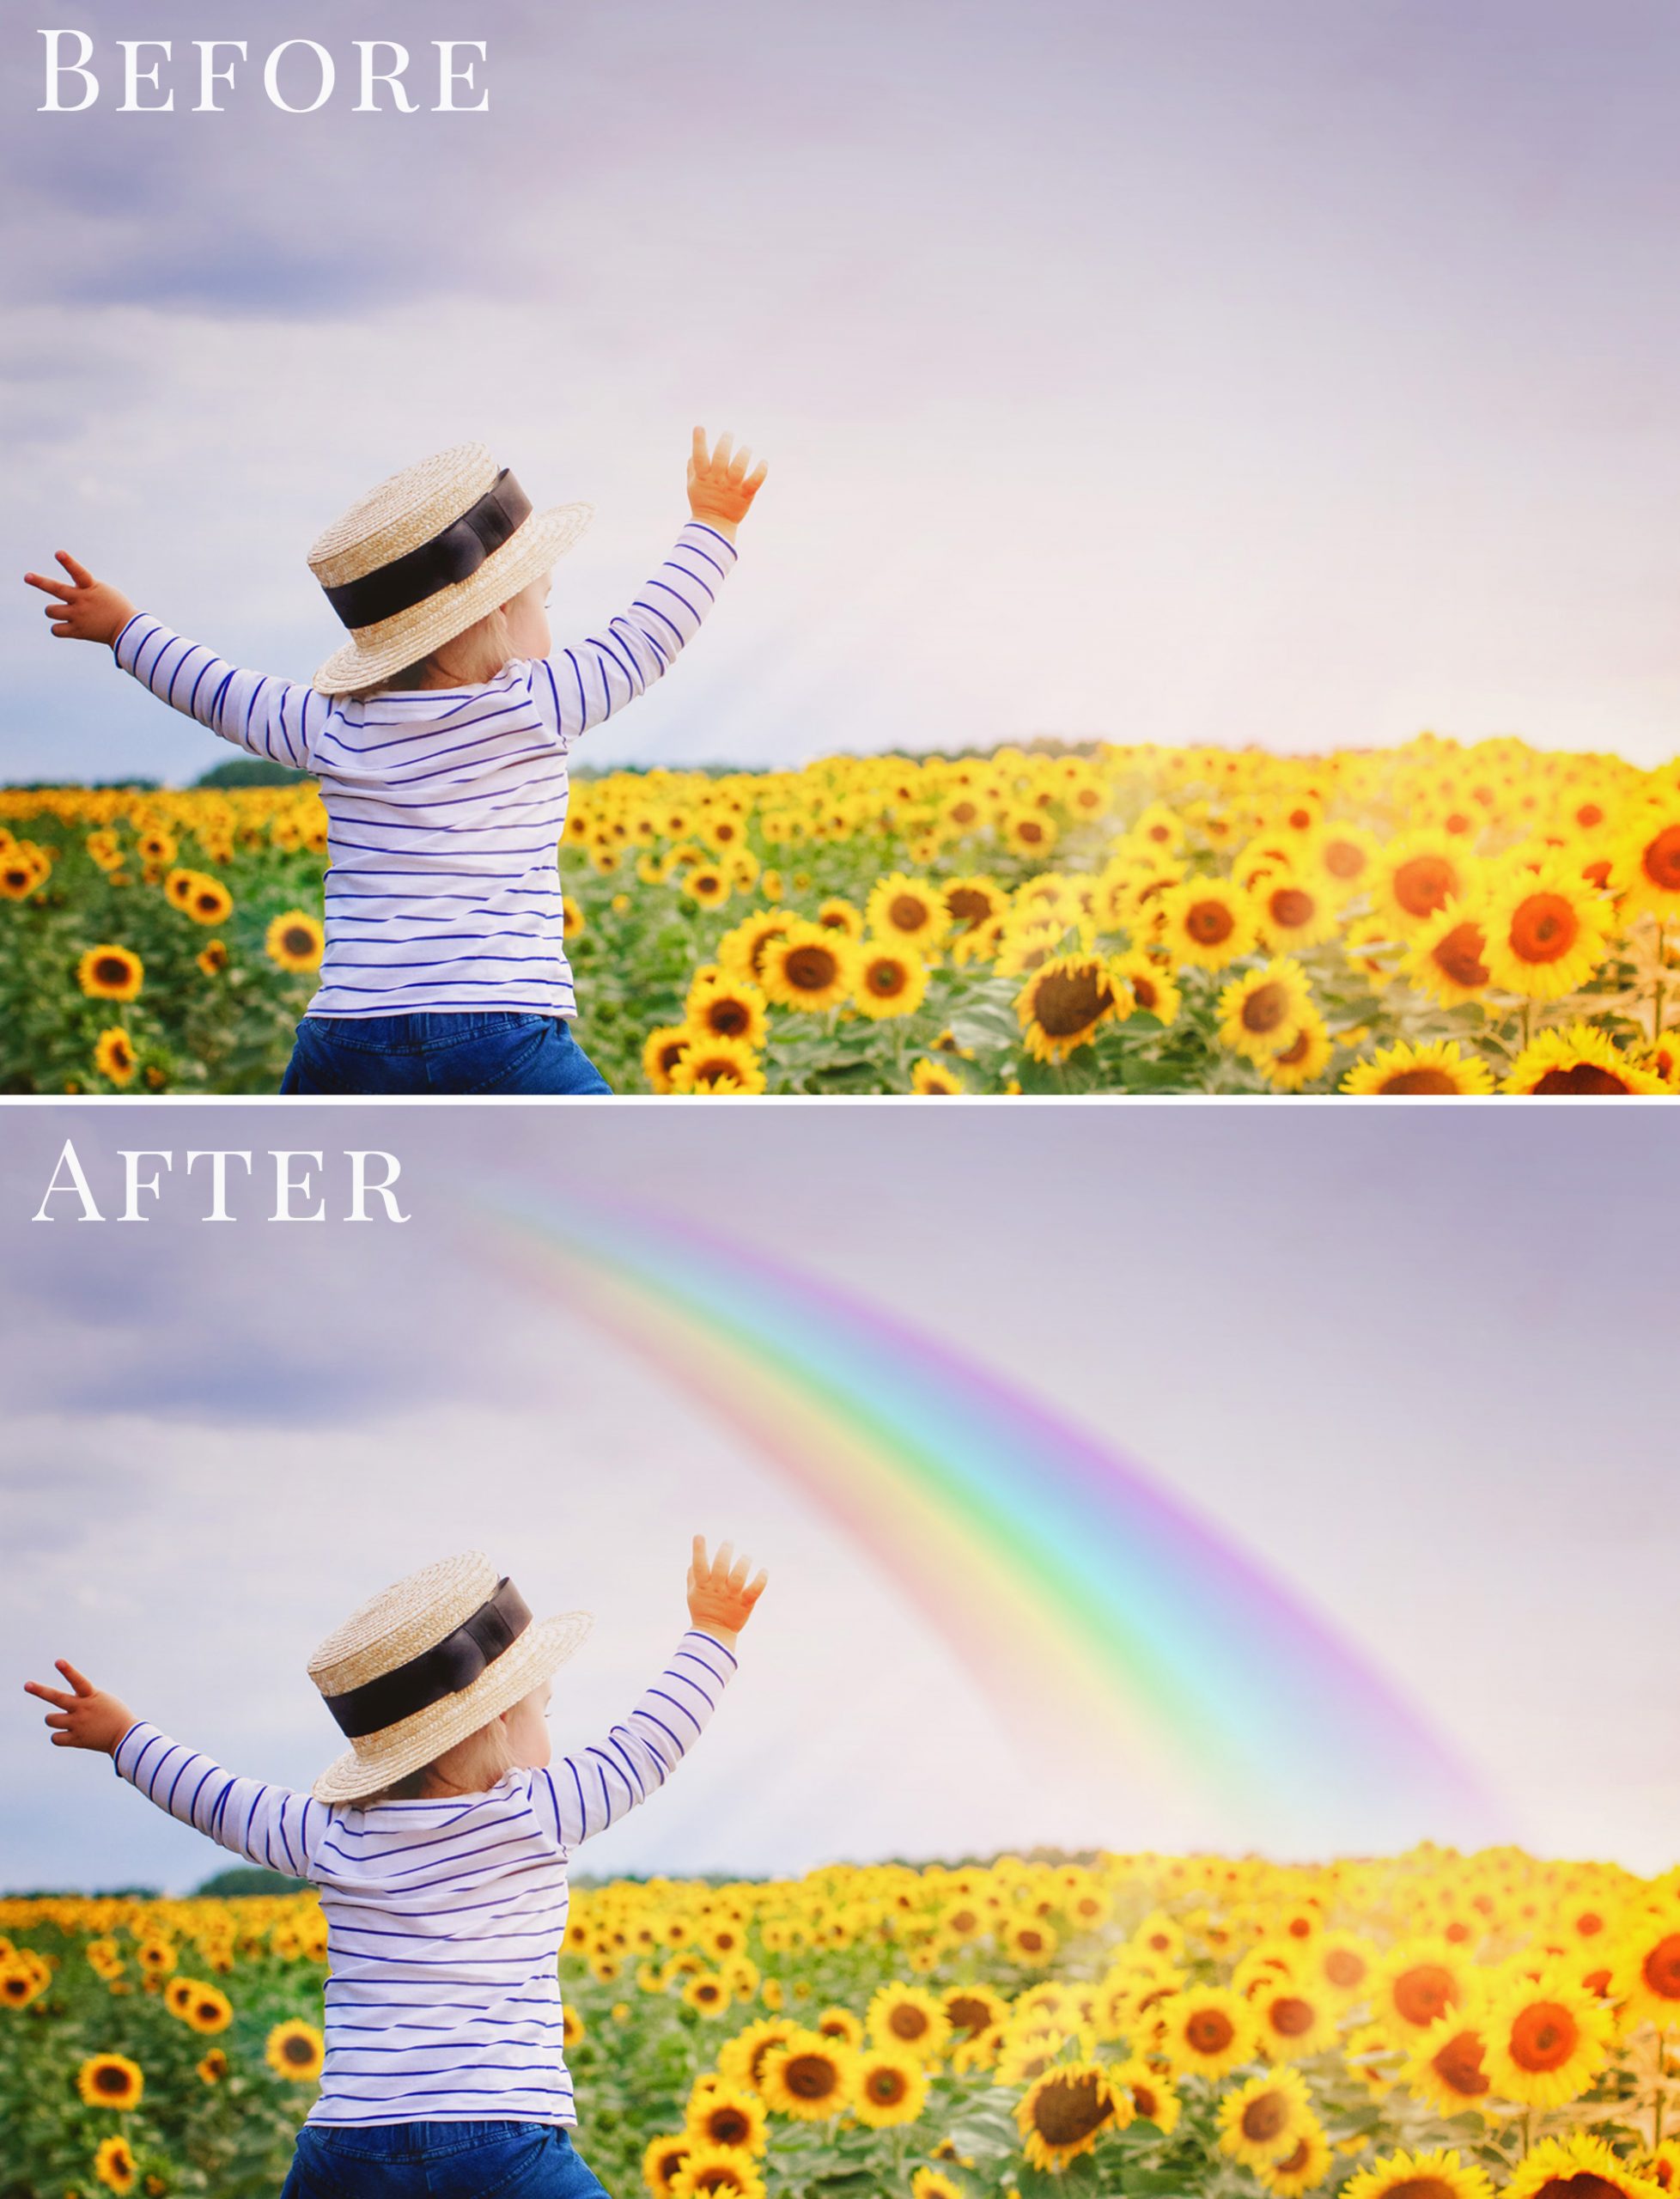 rainbow photo overlays